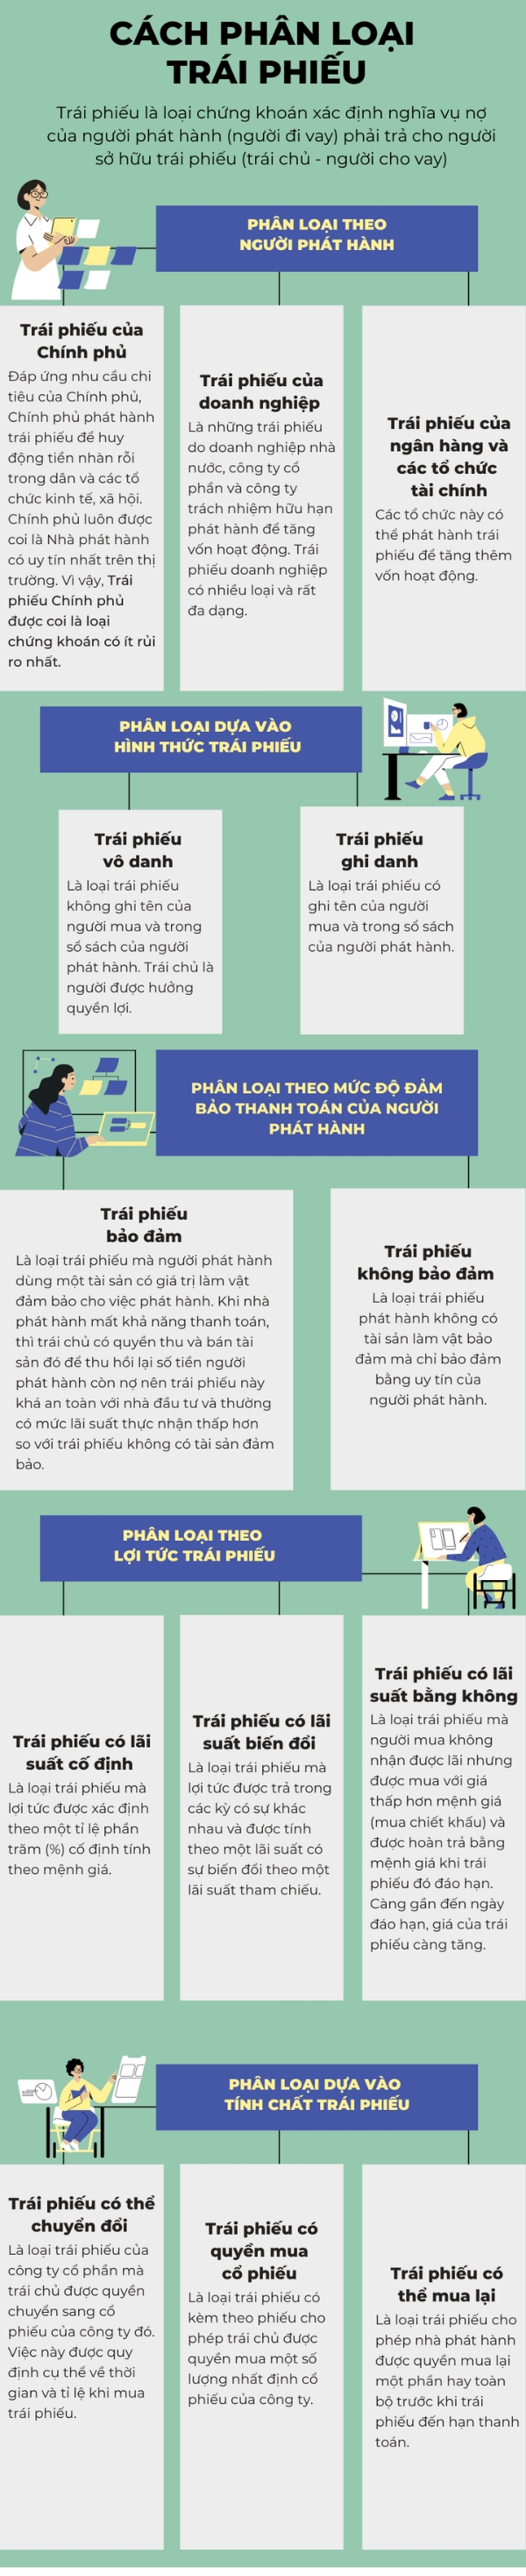 [Infographic] Cach phan loai trai phieu tren thi truong